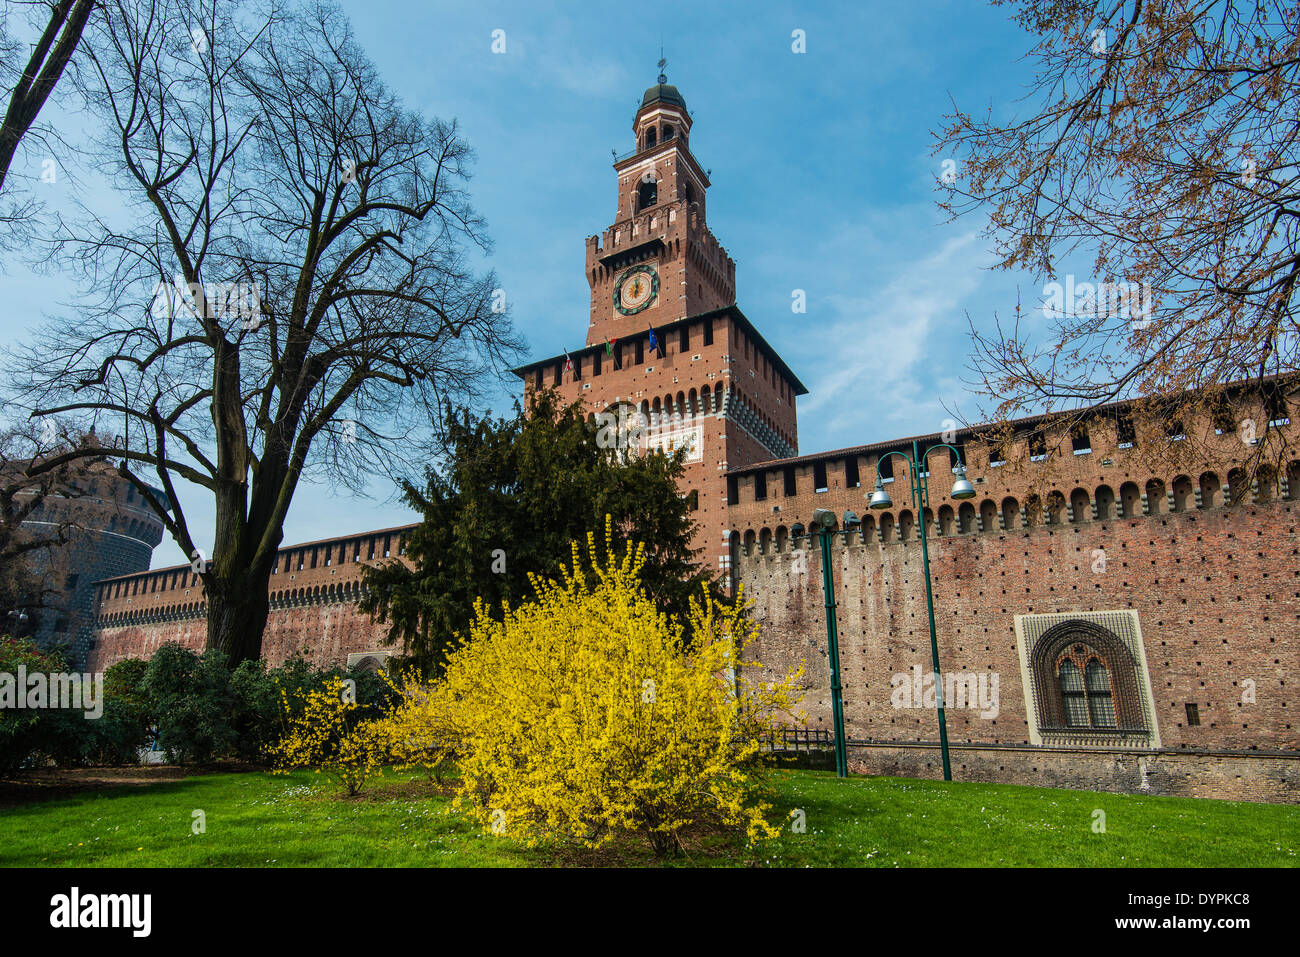 Castello Sforzesco medieval castle, Milan, Lombardy, Italy Stock Photo